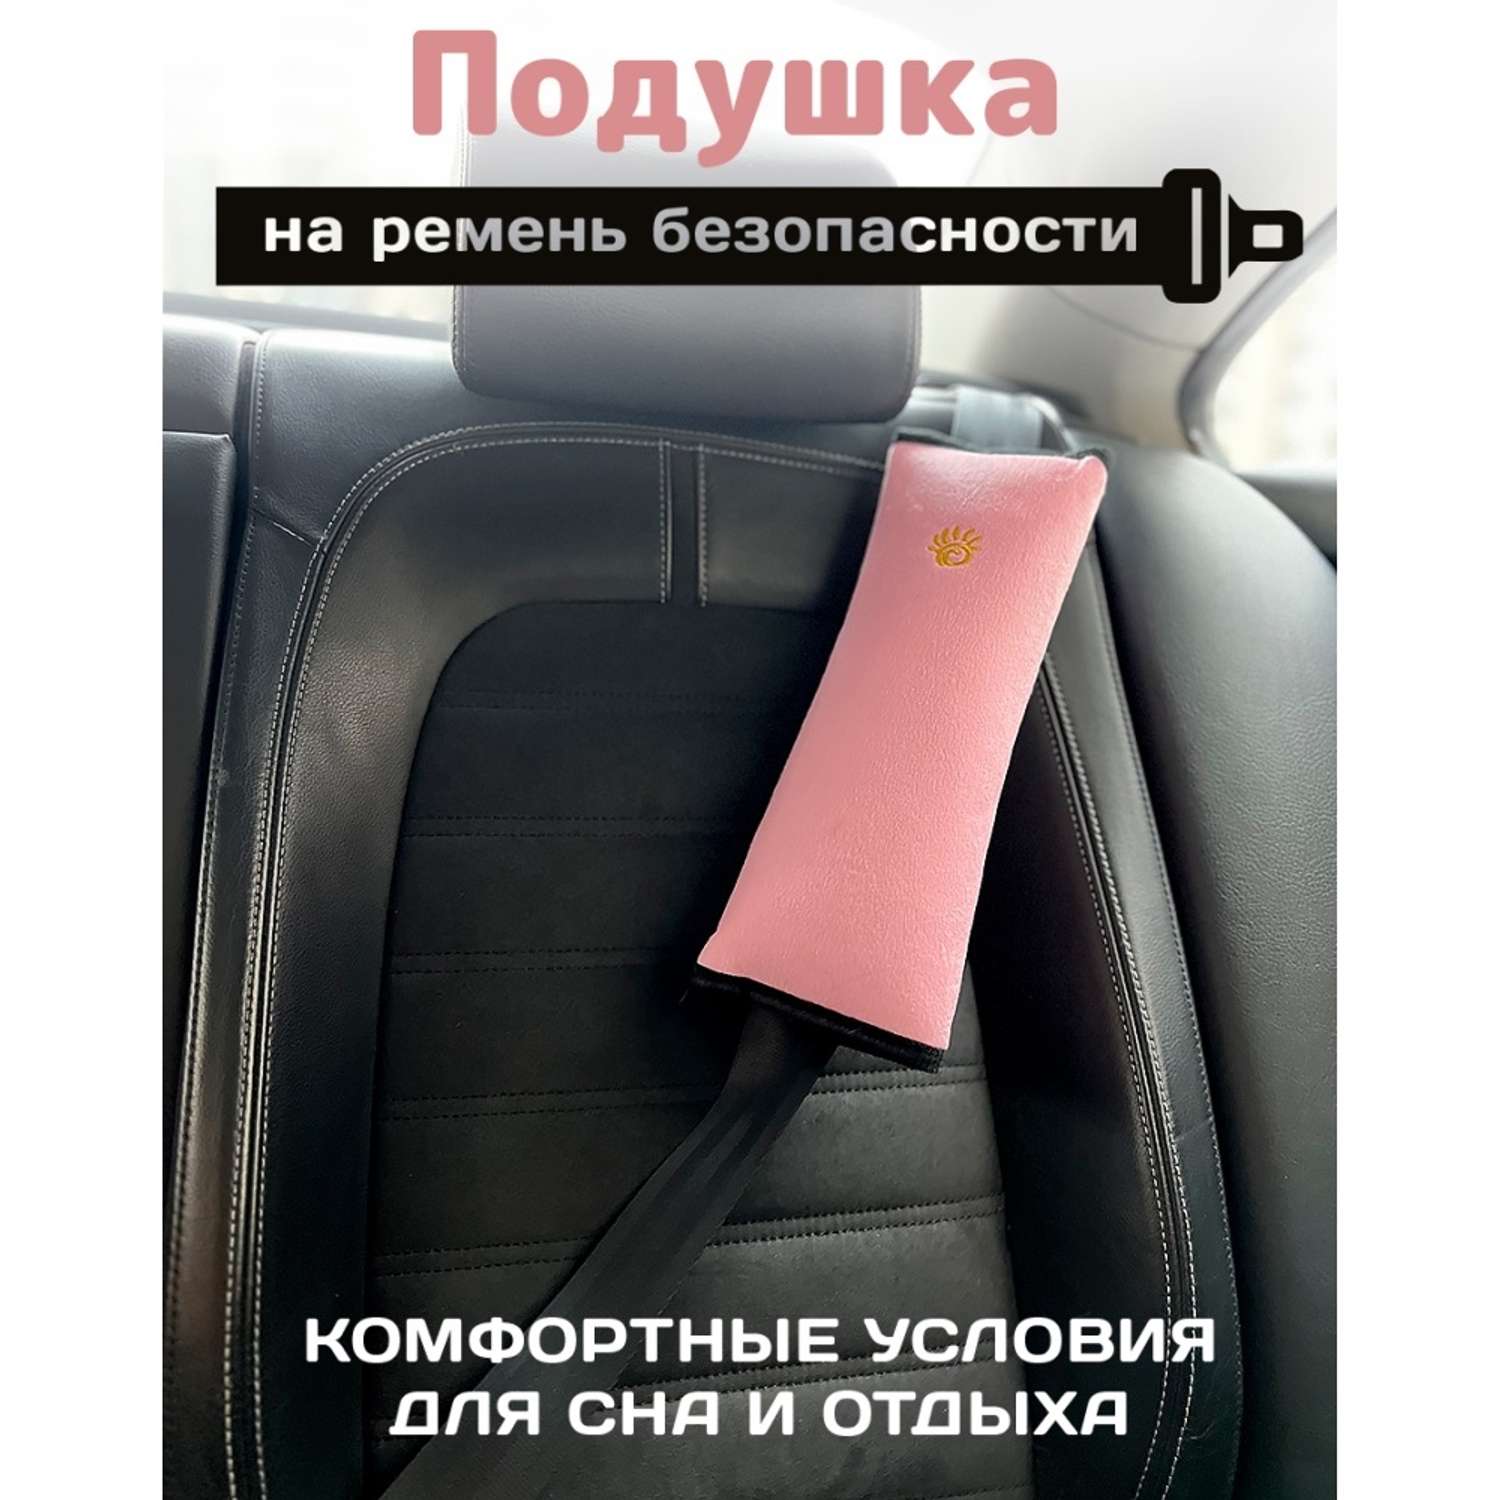 Накладка на ремень Territory безопасности мягкая для детей в машину - фото 2